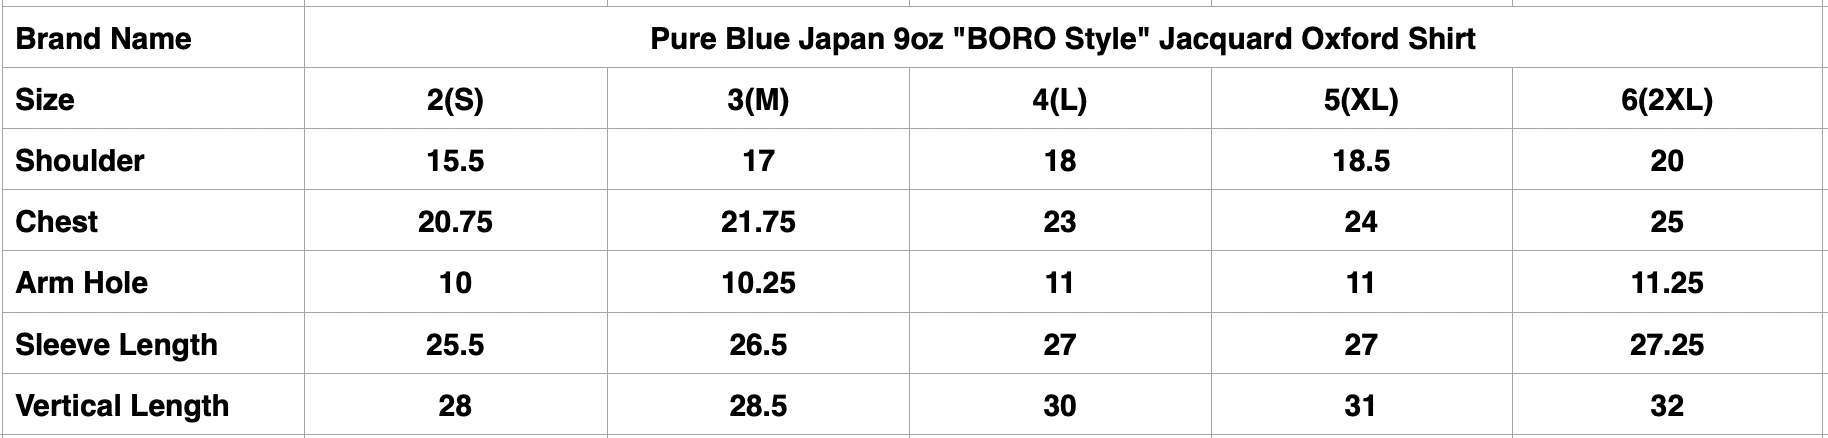 Pure Blue Japan 9oz "BORO Style" Jacquard Oxford Shirt